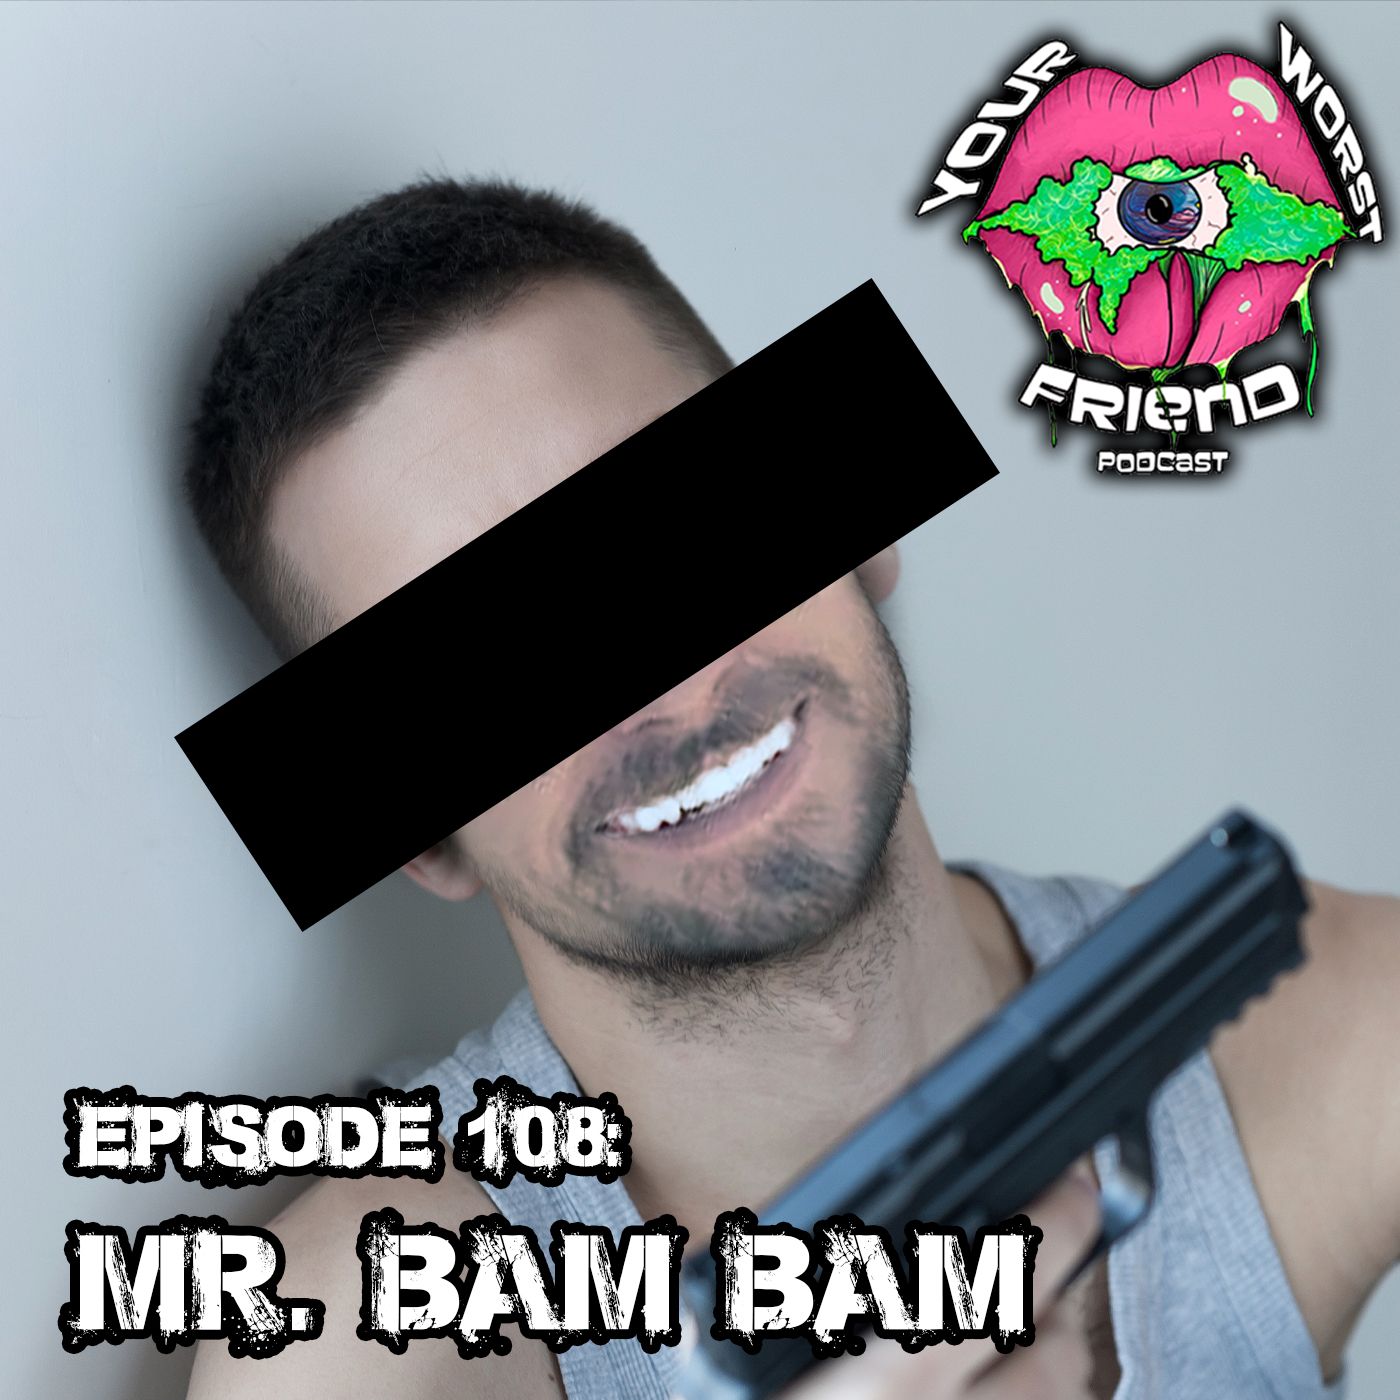 Episode 108: Mr. Bam Bam